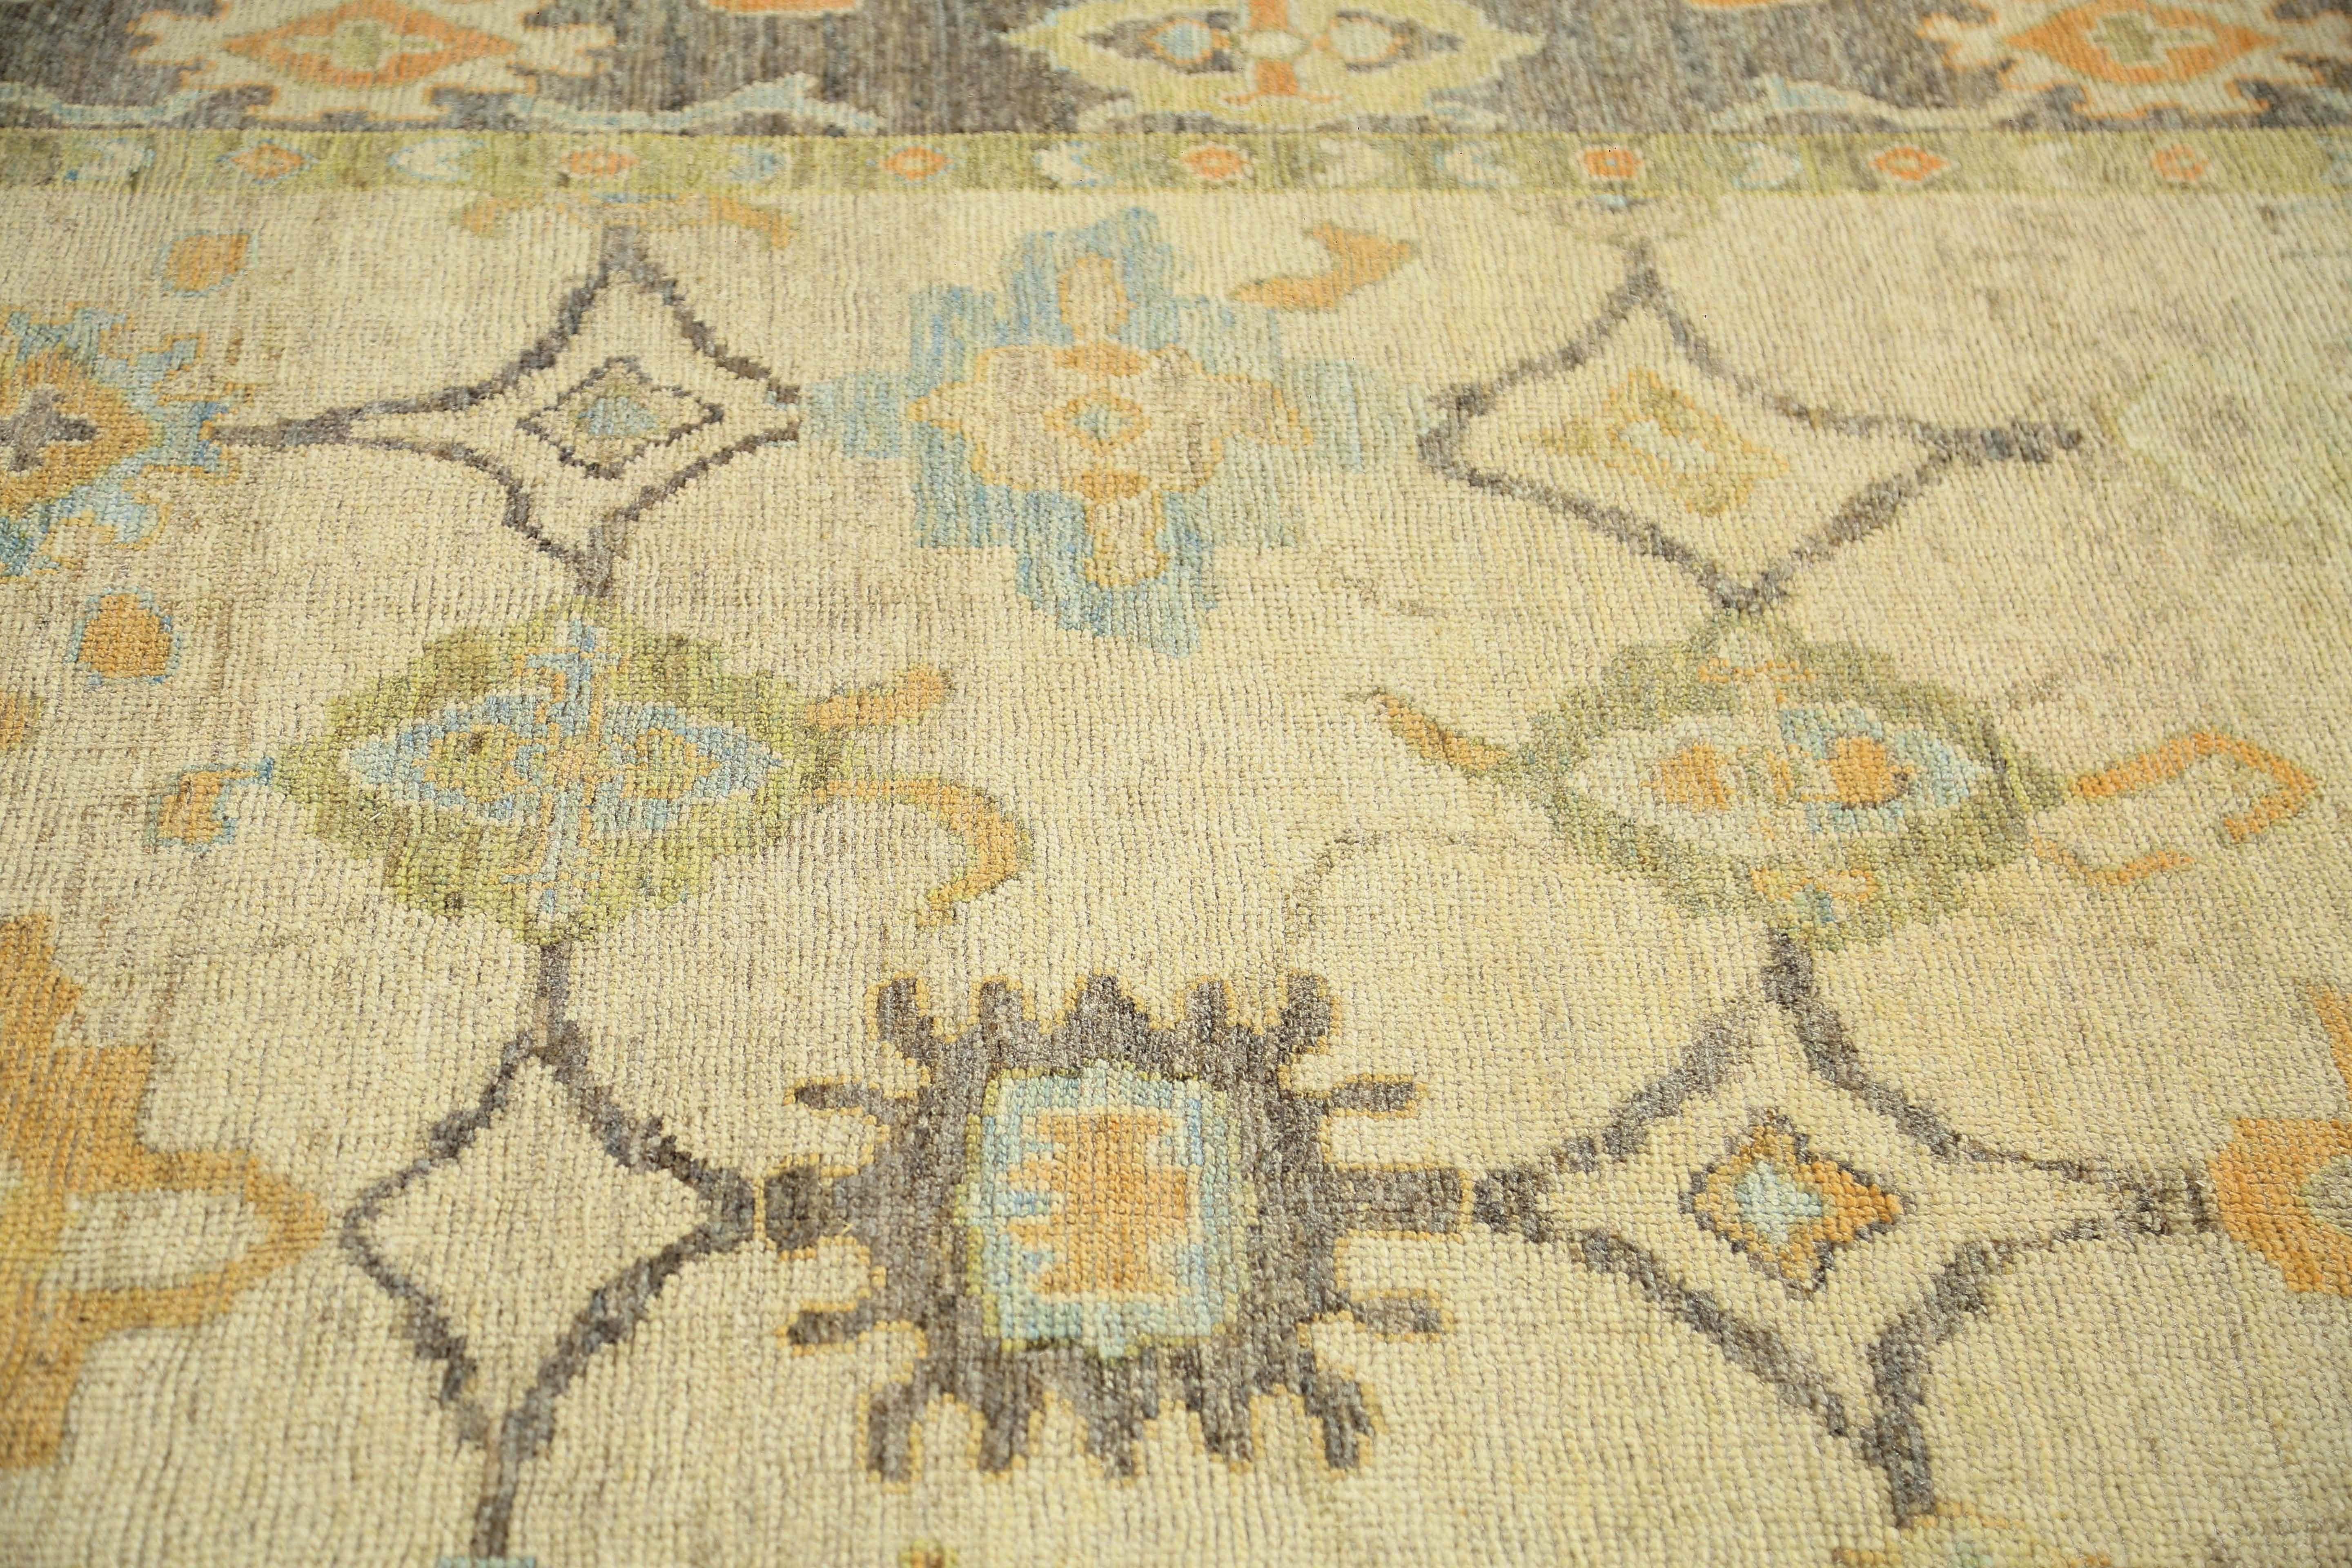 Wir stellen Ihnen unseren exquisiten handgefertigten türkischen Oushak-Teppich in der Größe 8'5'' x 11'3'' vor. Dieser atemberaubende Teppich zeichnet sich durch eine schöne Kombination aus erdigen Farben aus, darunter Braun- und Beigetöne, die sich